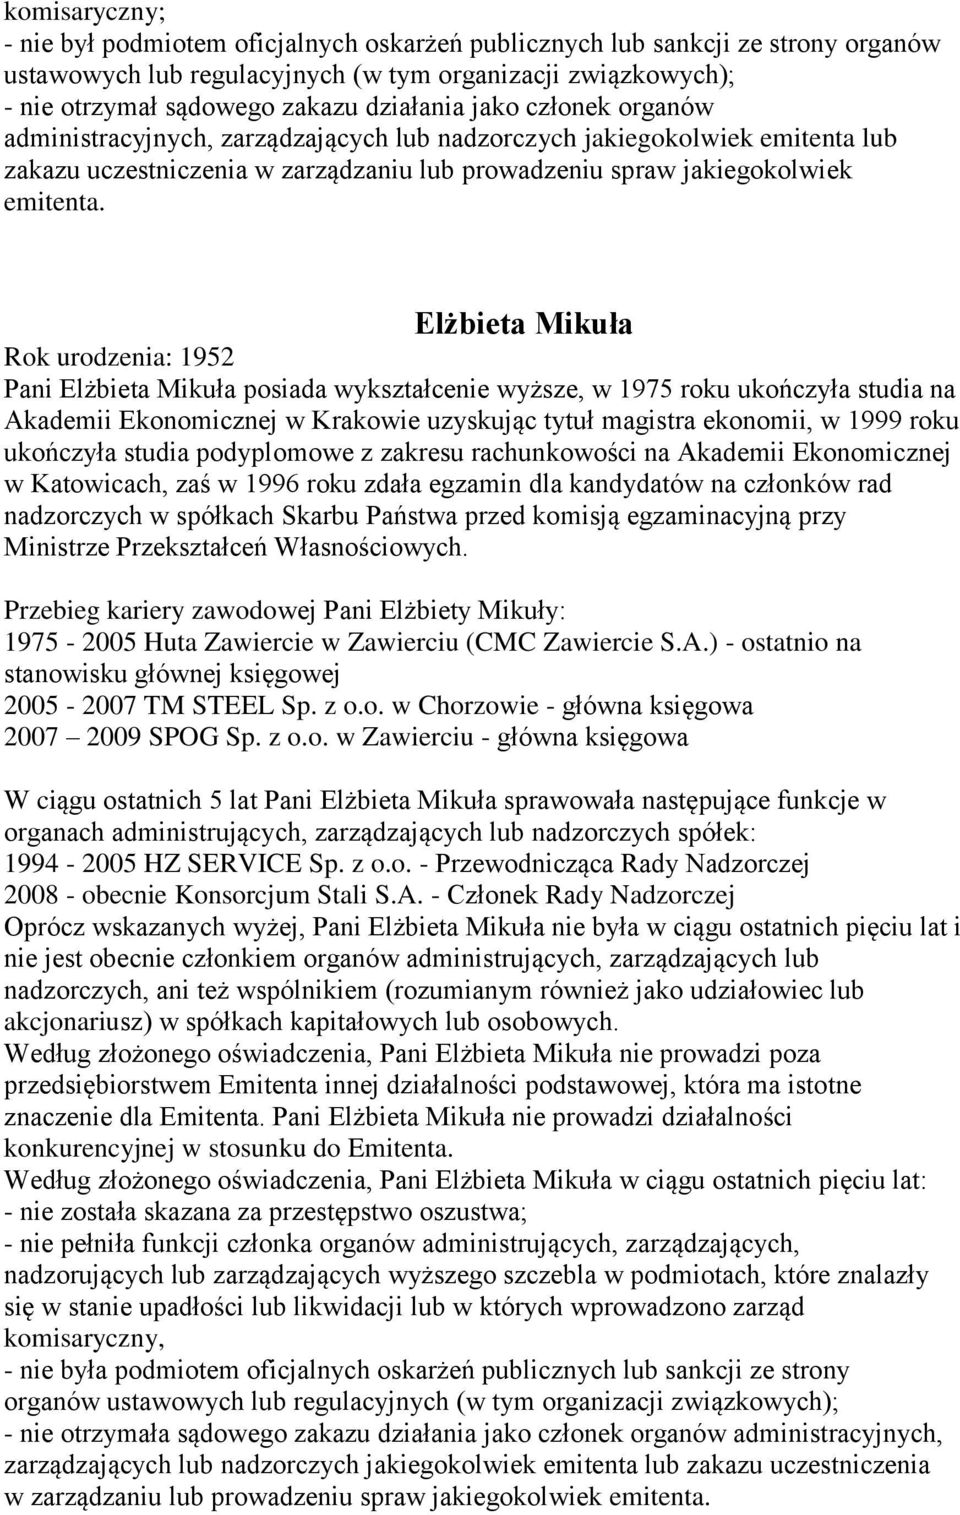 Elżbieta Mikuła Rok urodzenia: 1952 Pani Elżbieta Mikuła posiada wykształcenie wyższe, w 1975 roku ukończyła studia na Akademii Ekonomicznej w Krakowie uzyskując tytuł magistra ekonomii, w 1999 roku